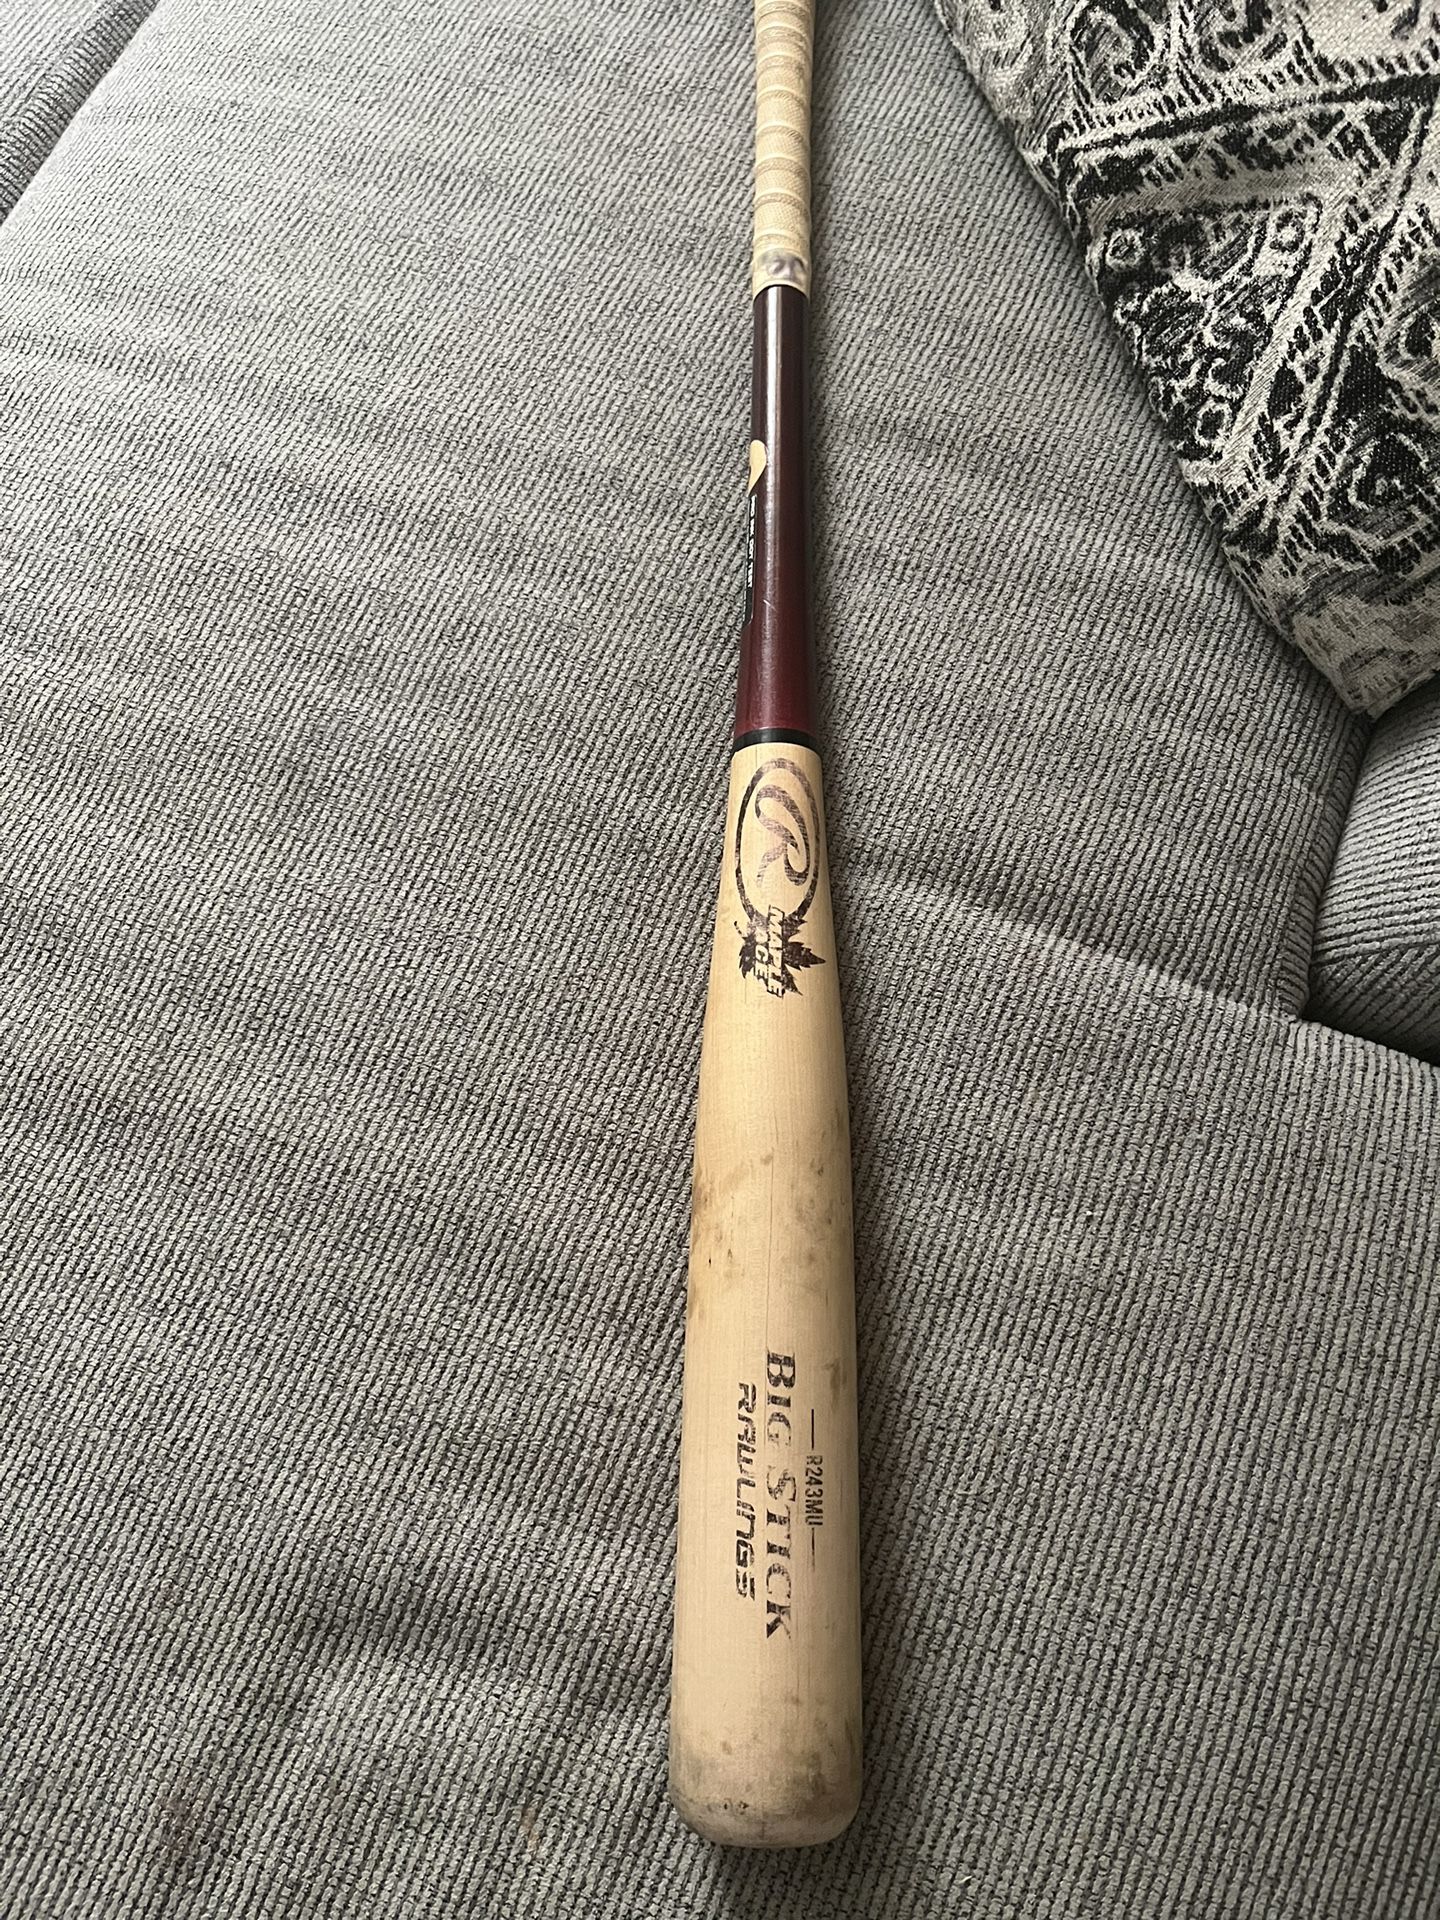 Rawlings Big Stick Maple Ace Wooden Baseball Bat